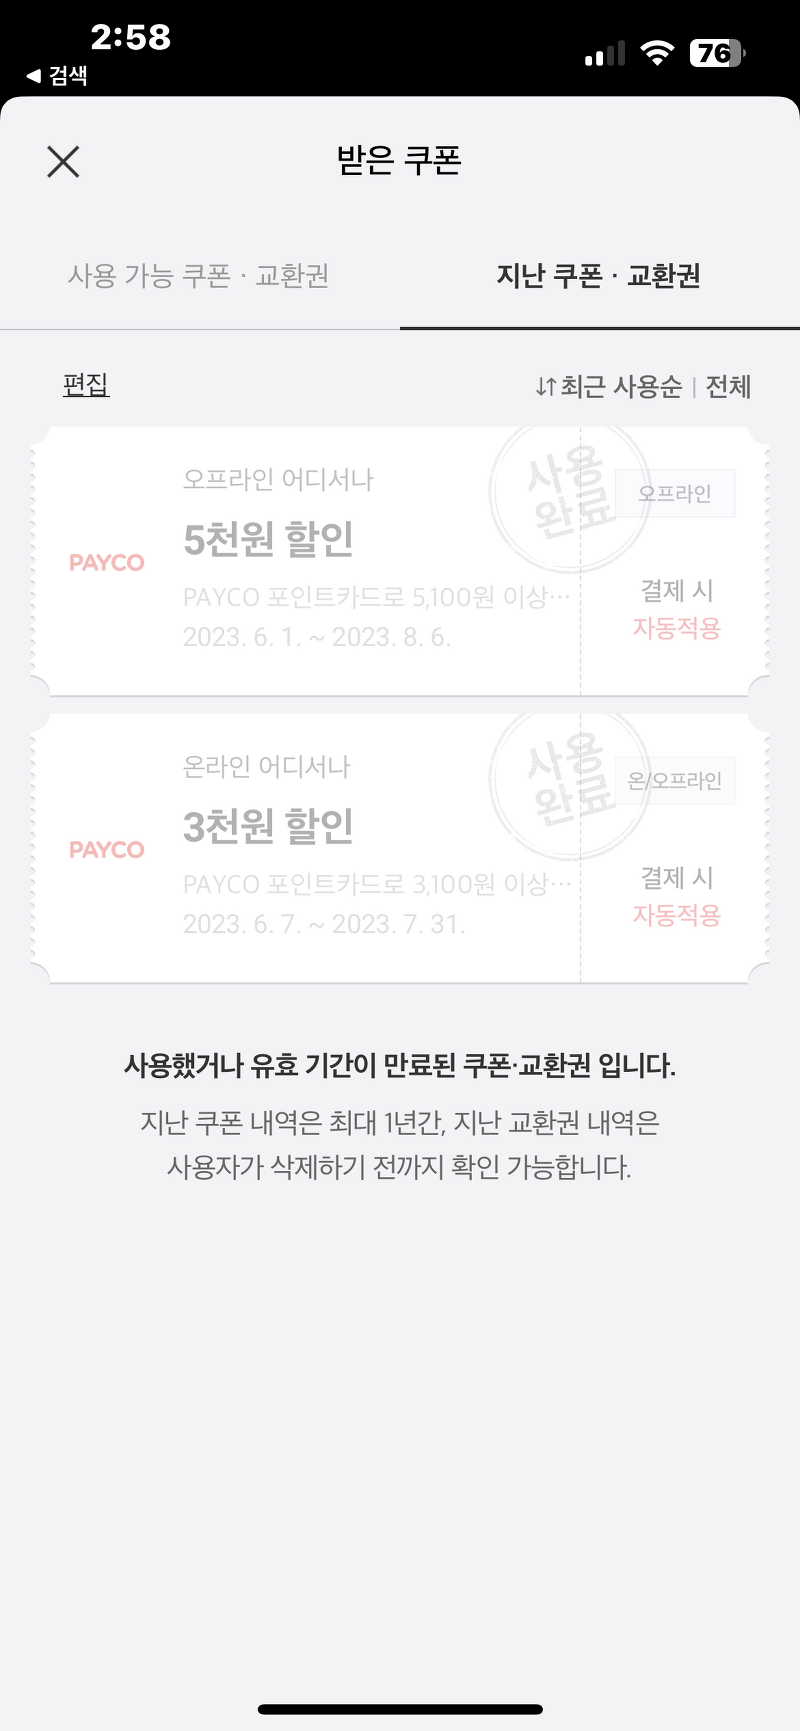 PAYCO 포인트 카드 혜택 8천원 쓰고 8천원 즉시할인!!!!